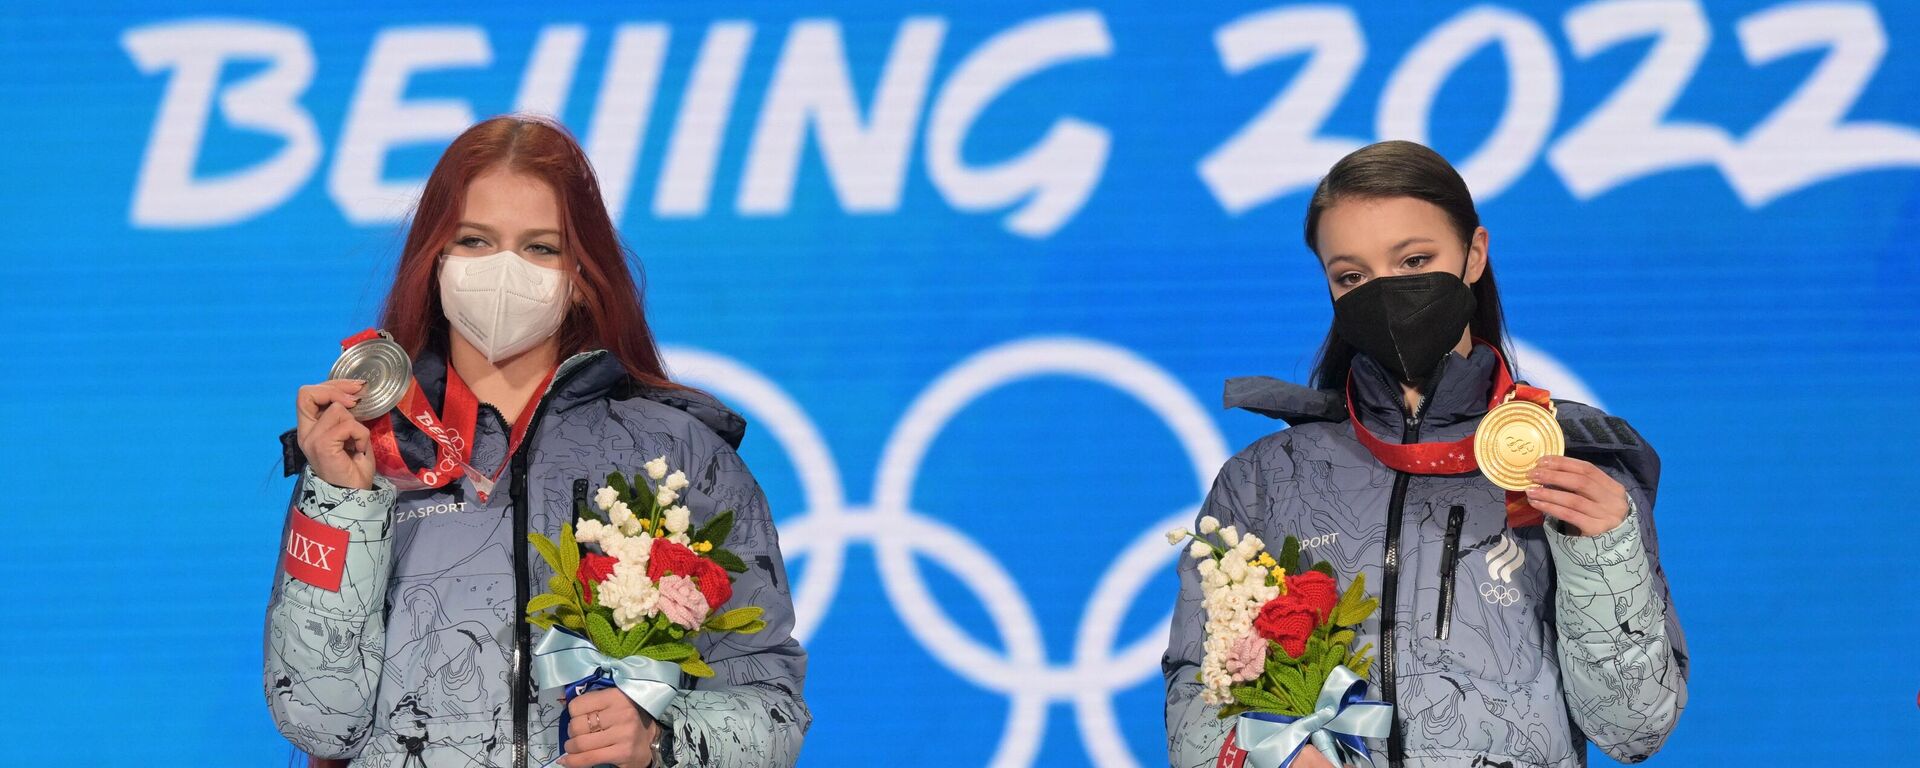 Rusijos dailiojo čiuožimo atstovės Ana Ščerbakova ir Aleksandra Trusova apdovanojimų ceremonijoje žiemos olimpinėse žaidynėse Pekine - Sputnik Lietuva, 1920, 01.03.2022